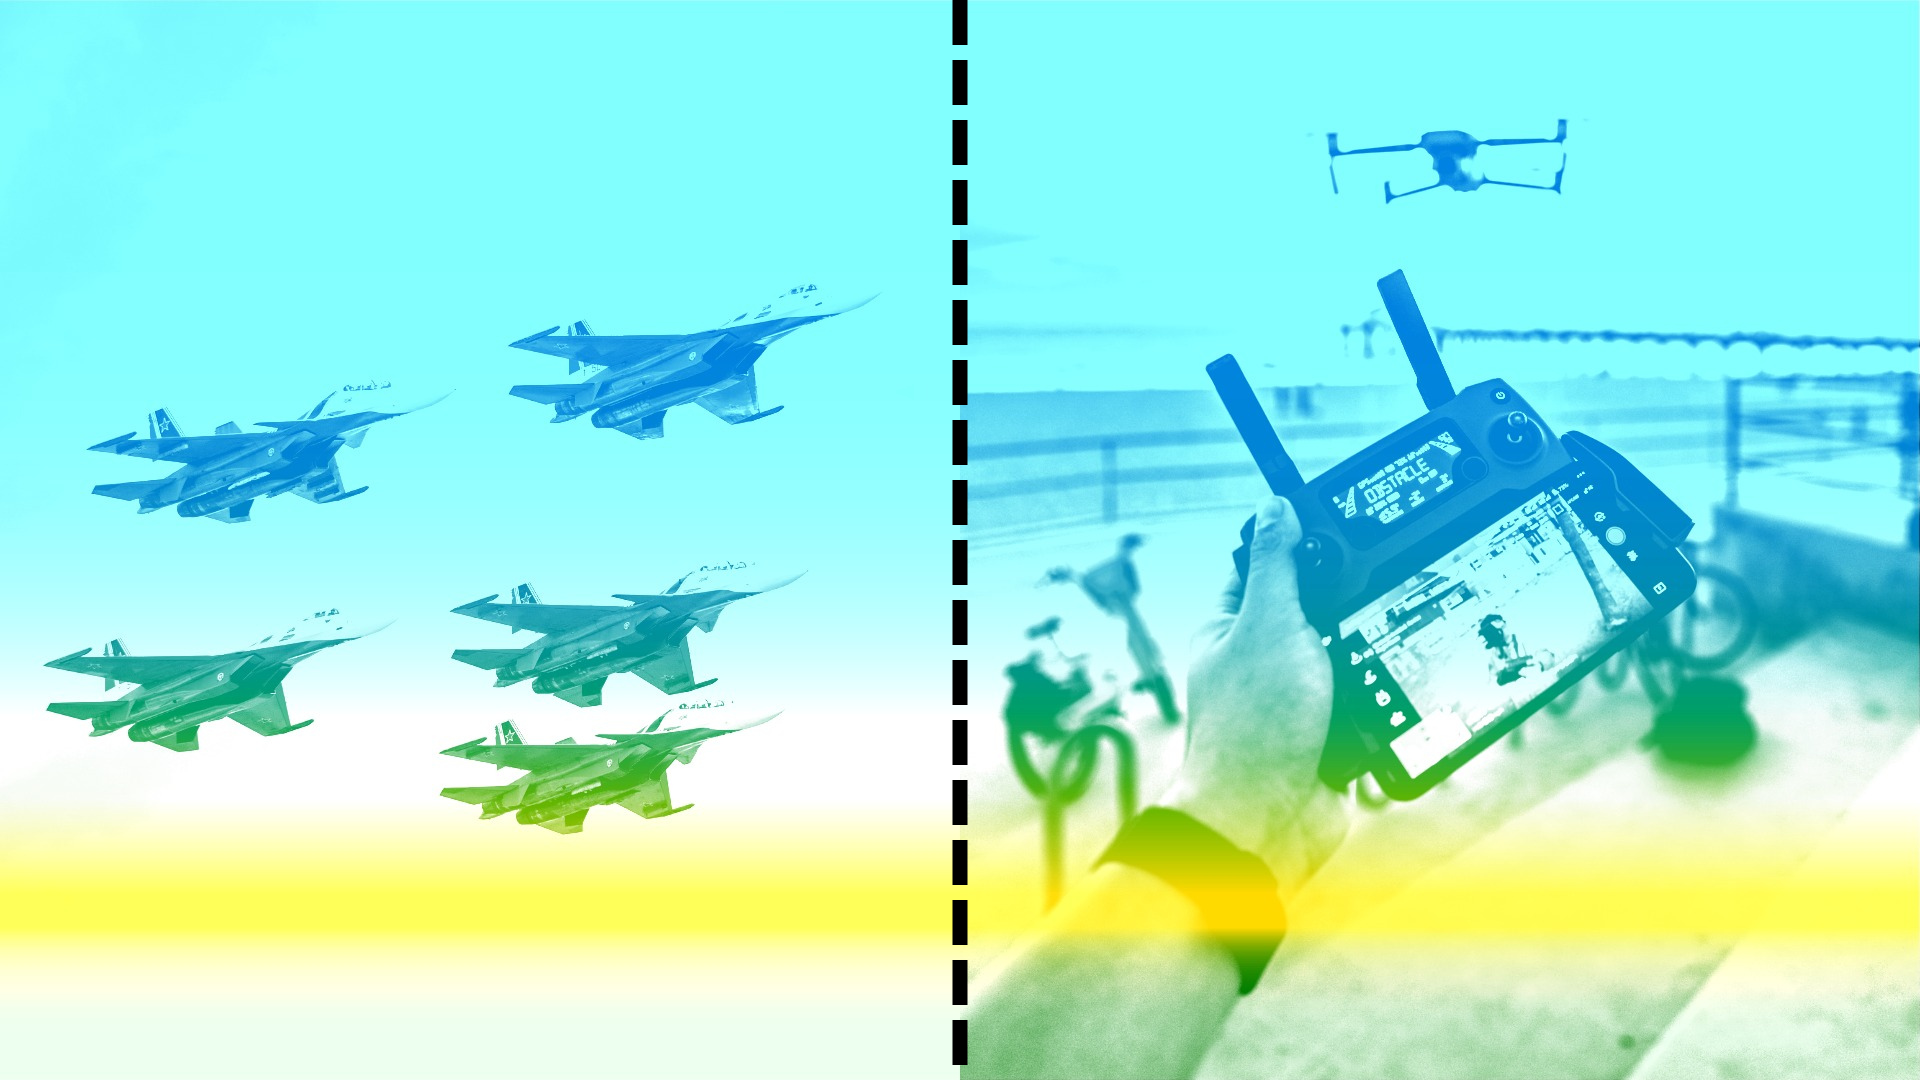 صورة أسطول من الطائرات العسكرية على اليسار. على اليمين صورة يدي شخص يتحكم في طائرة بدون طيار شوهدت من بعيد. الصور مفصولة بخط مثقوب.